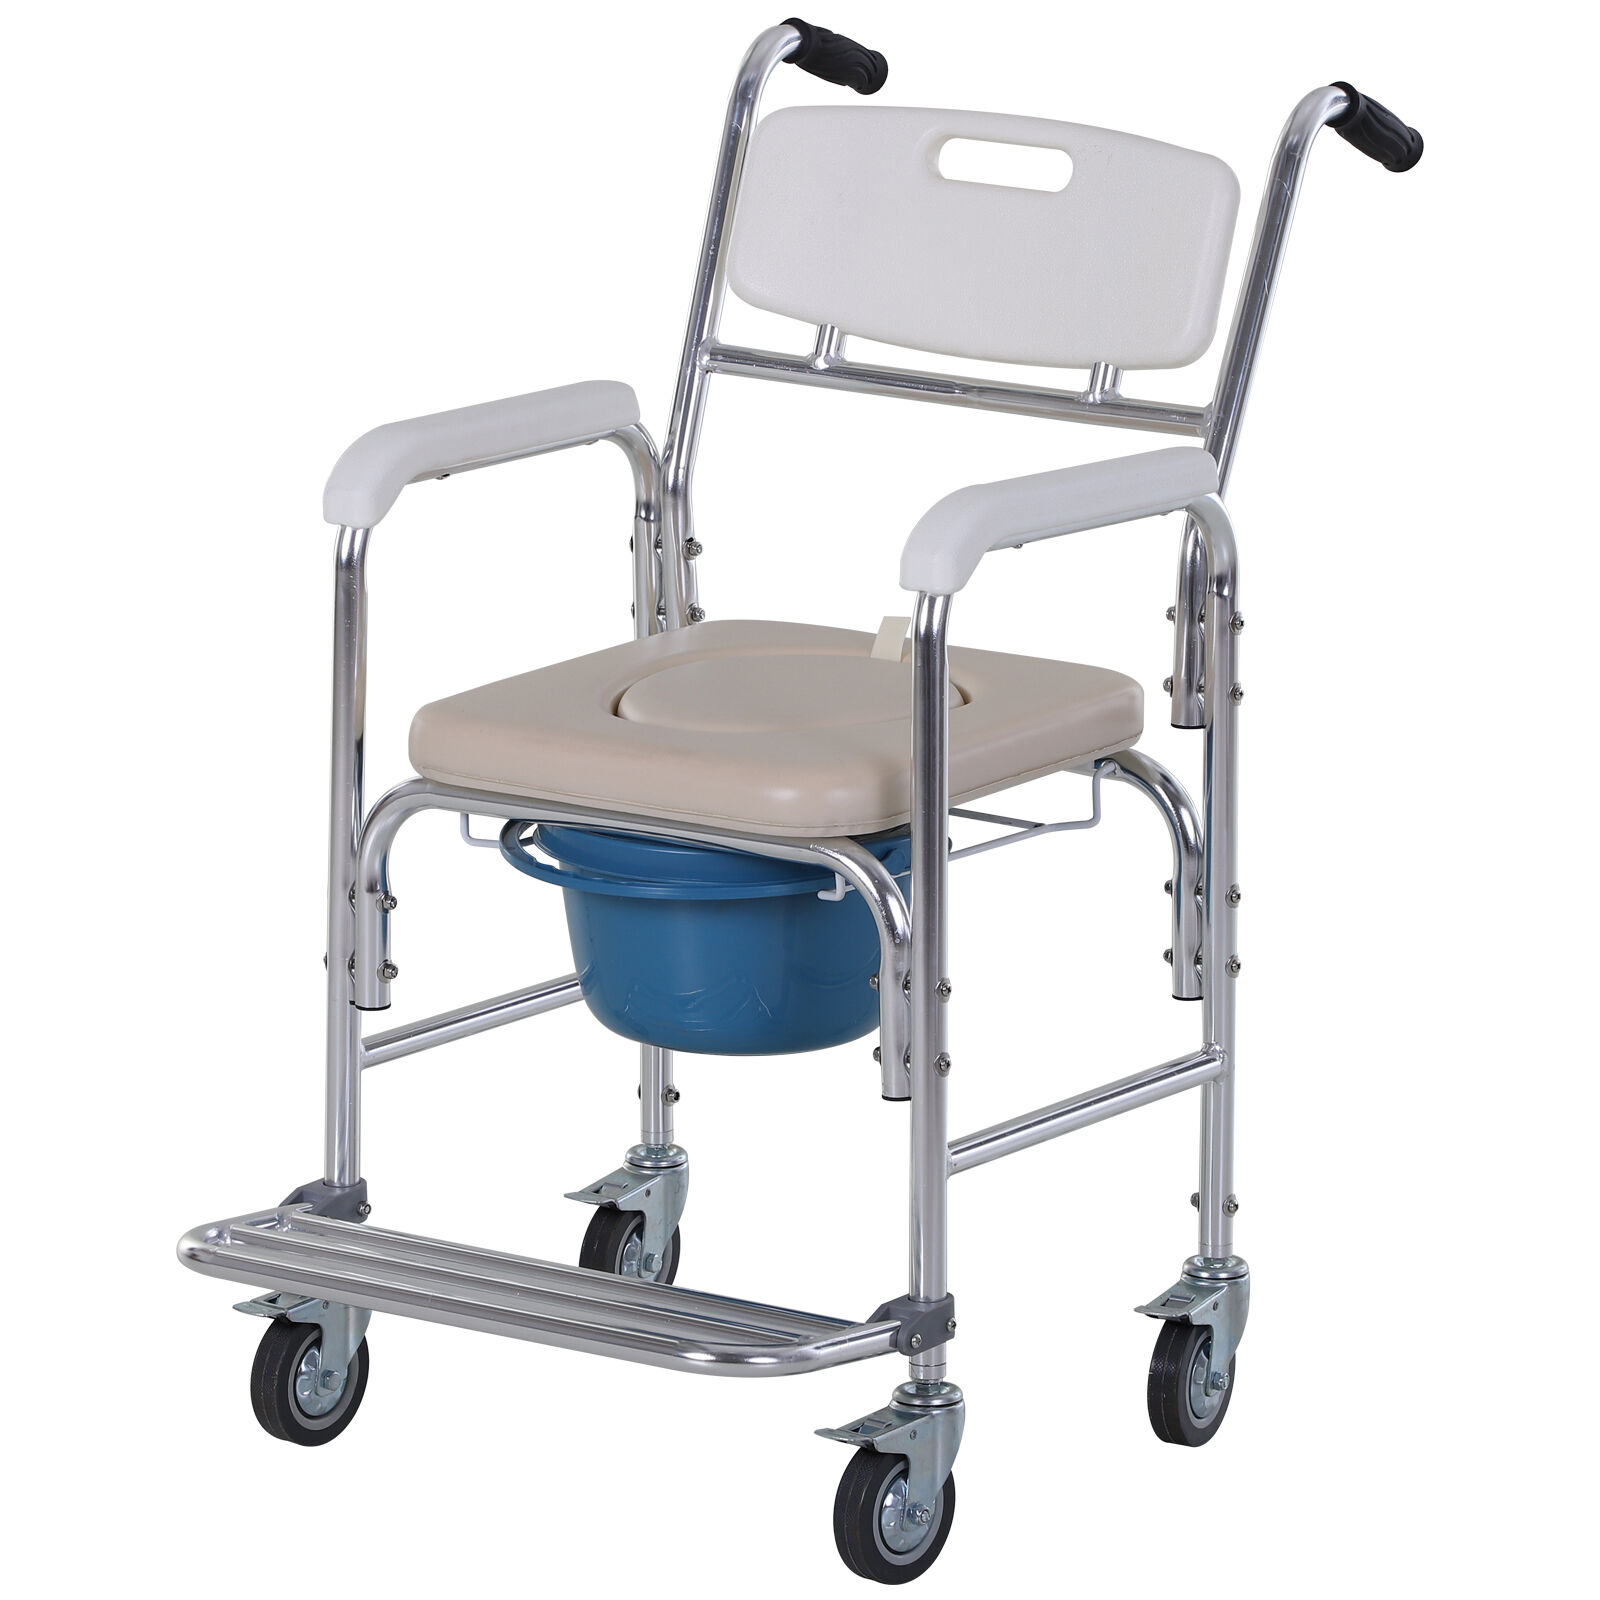 HOMCOM Chaise percée à roulettes - fauteuil roulant percé - chaise de douche - seau amovible, accoudoirs, repose-pied - acier chromé HDPE blanc